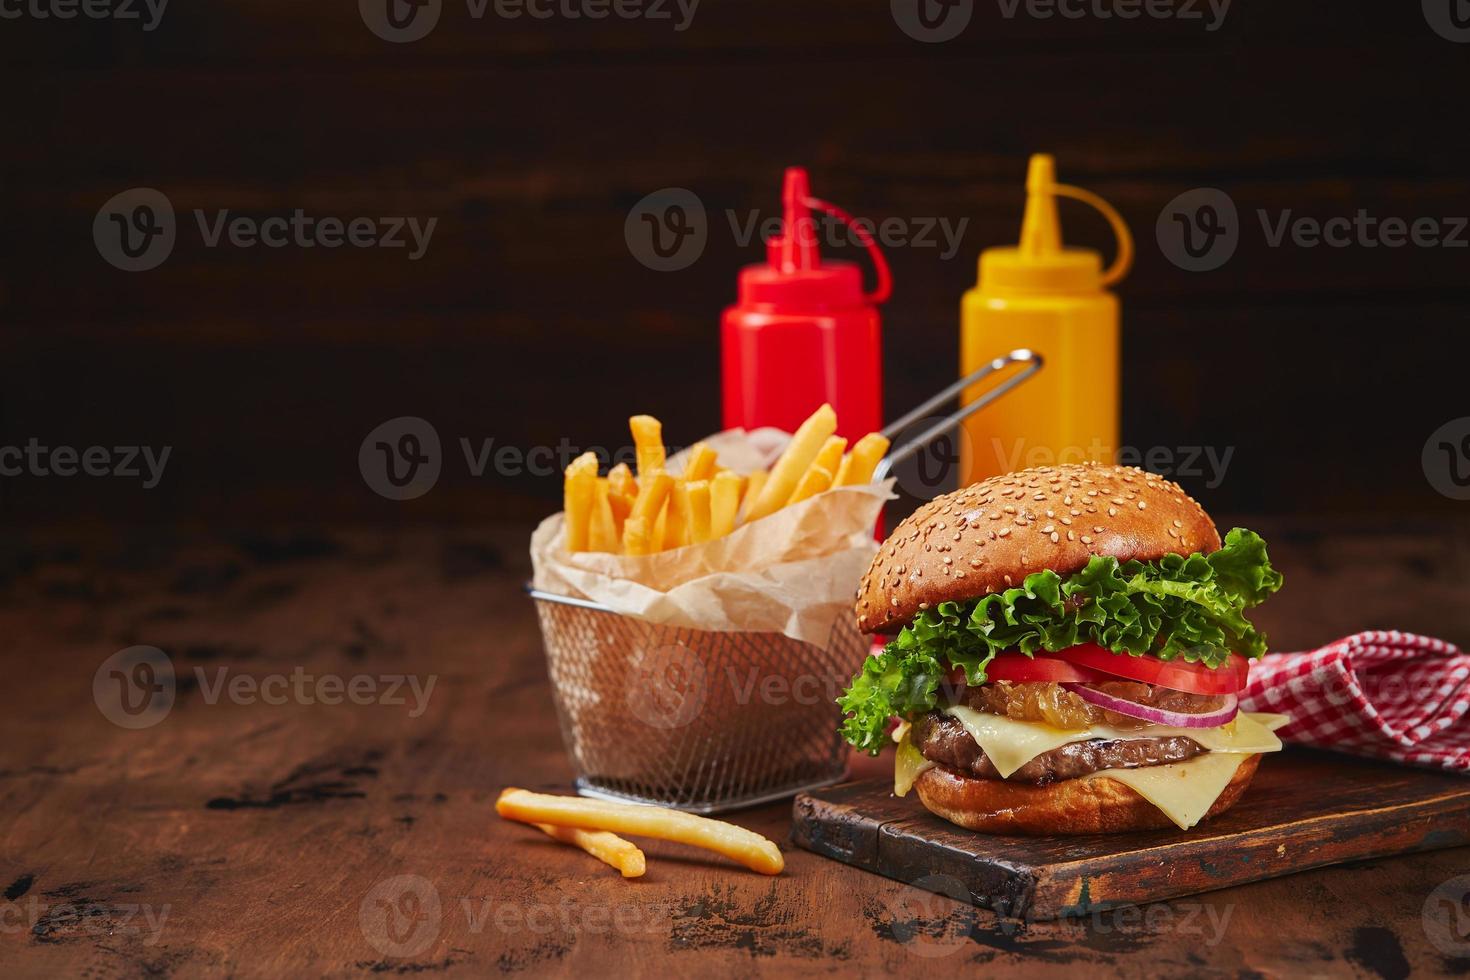 hemlagad burger med nötkött, ost och lök marmelad på en trä- styrelse, frites i en metall korg och såser. snabb mat begrepp, amerikan mat foto